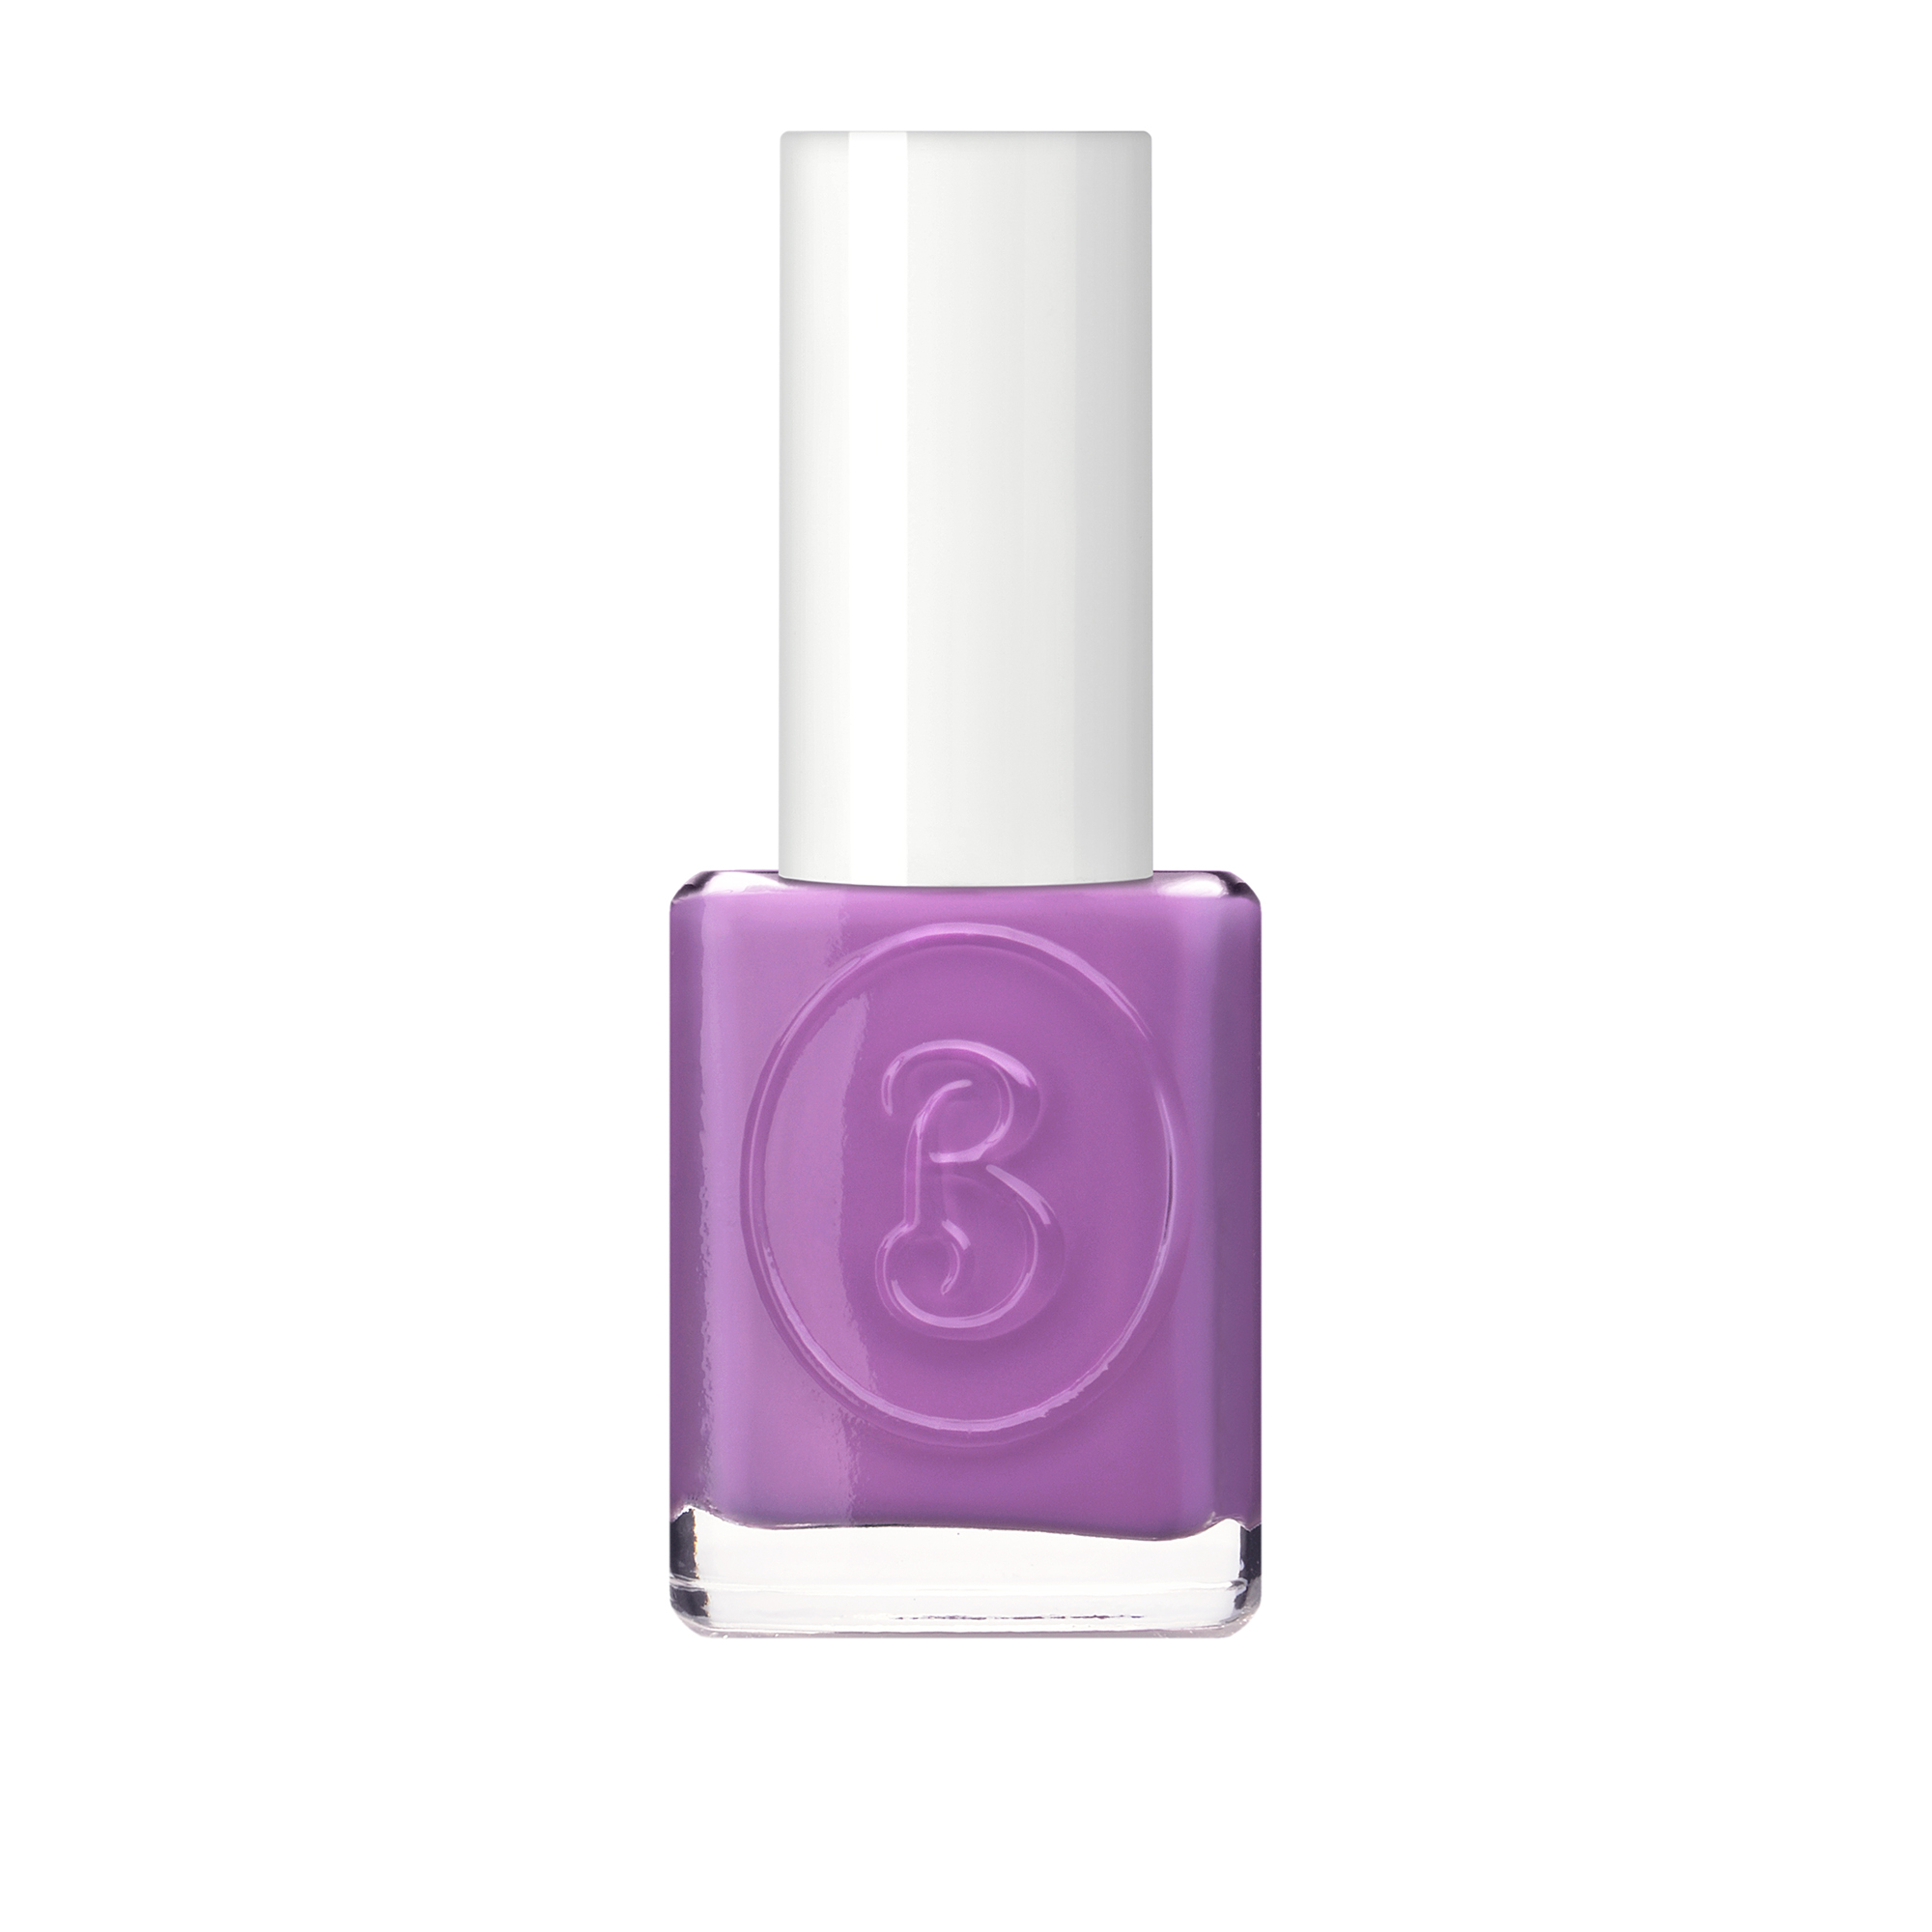 BERENICE 18 лак для ногтей, светло фиолетовый / Light violet